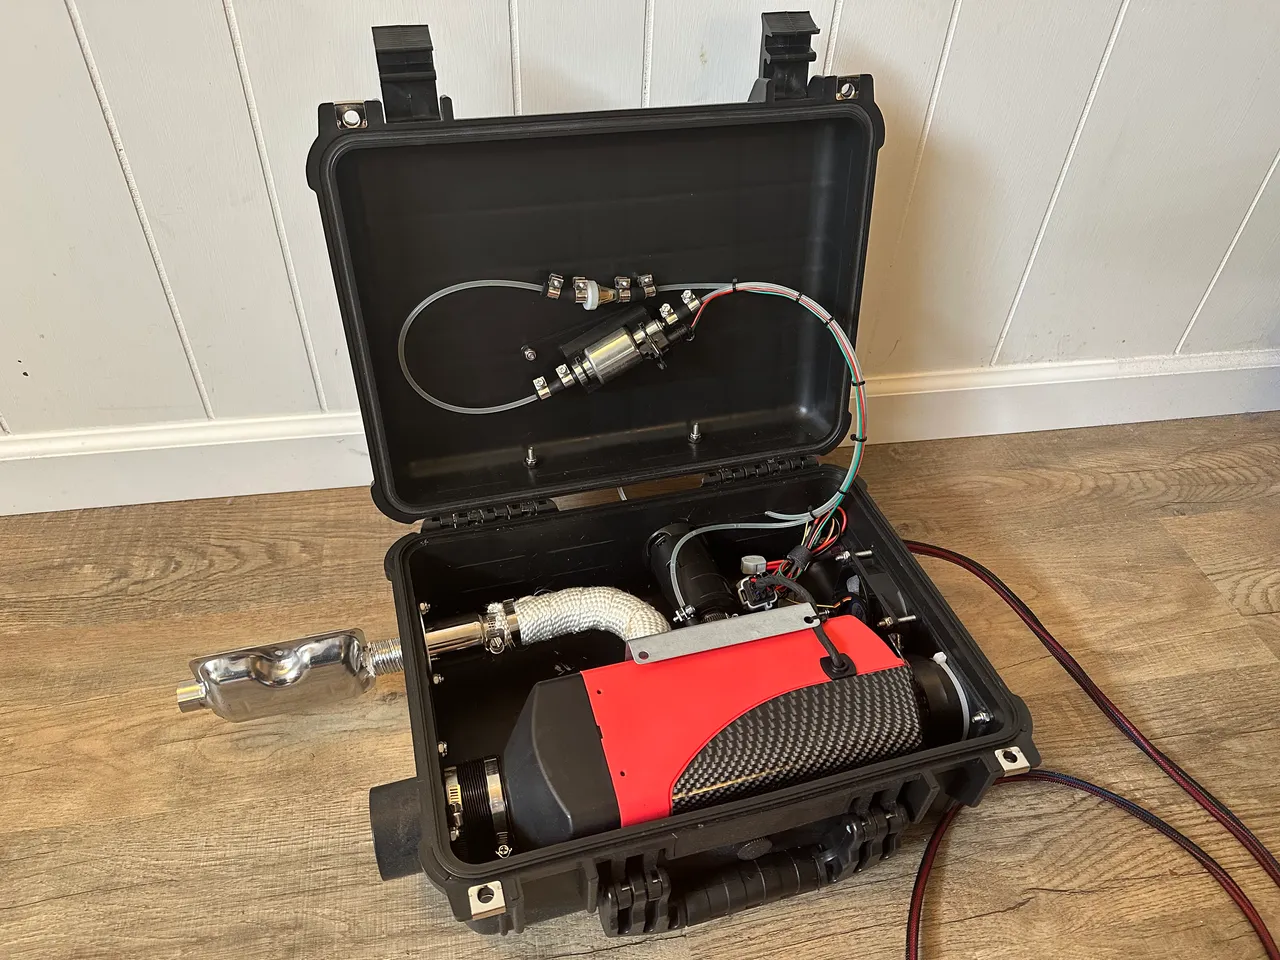 Diesel Heater in a Weatherproof Case von kluiten